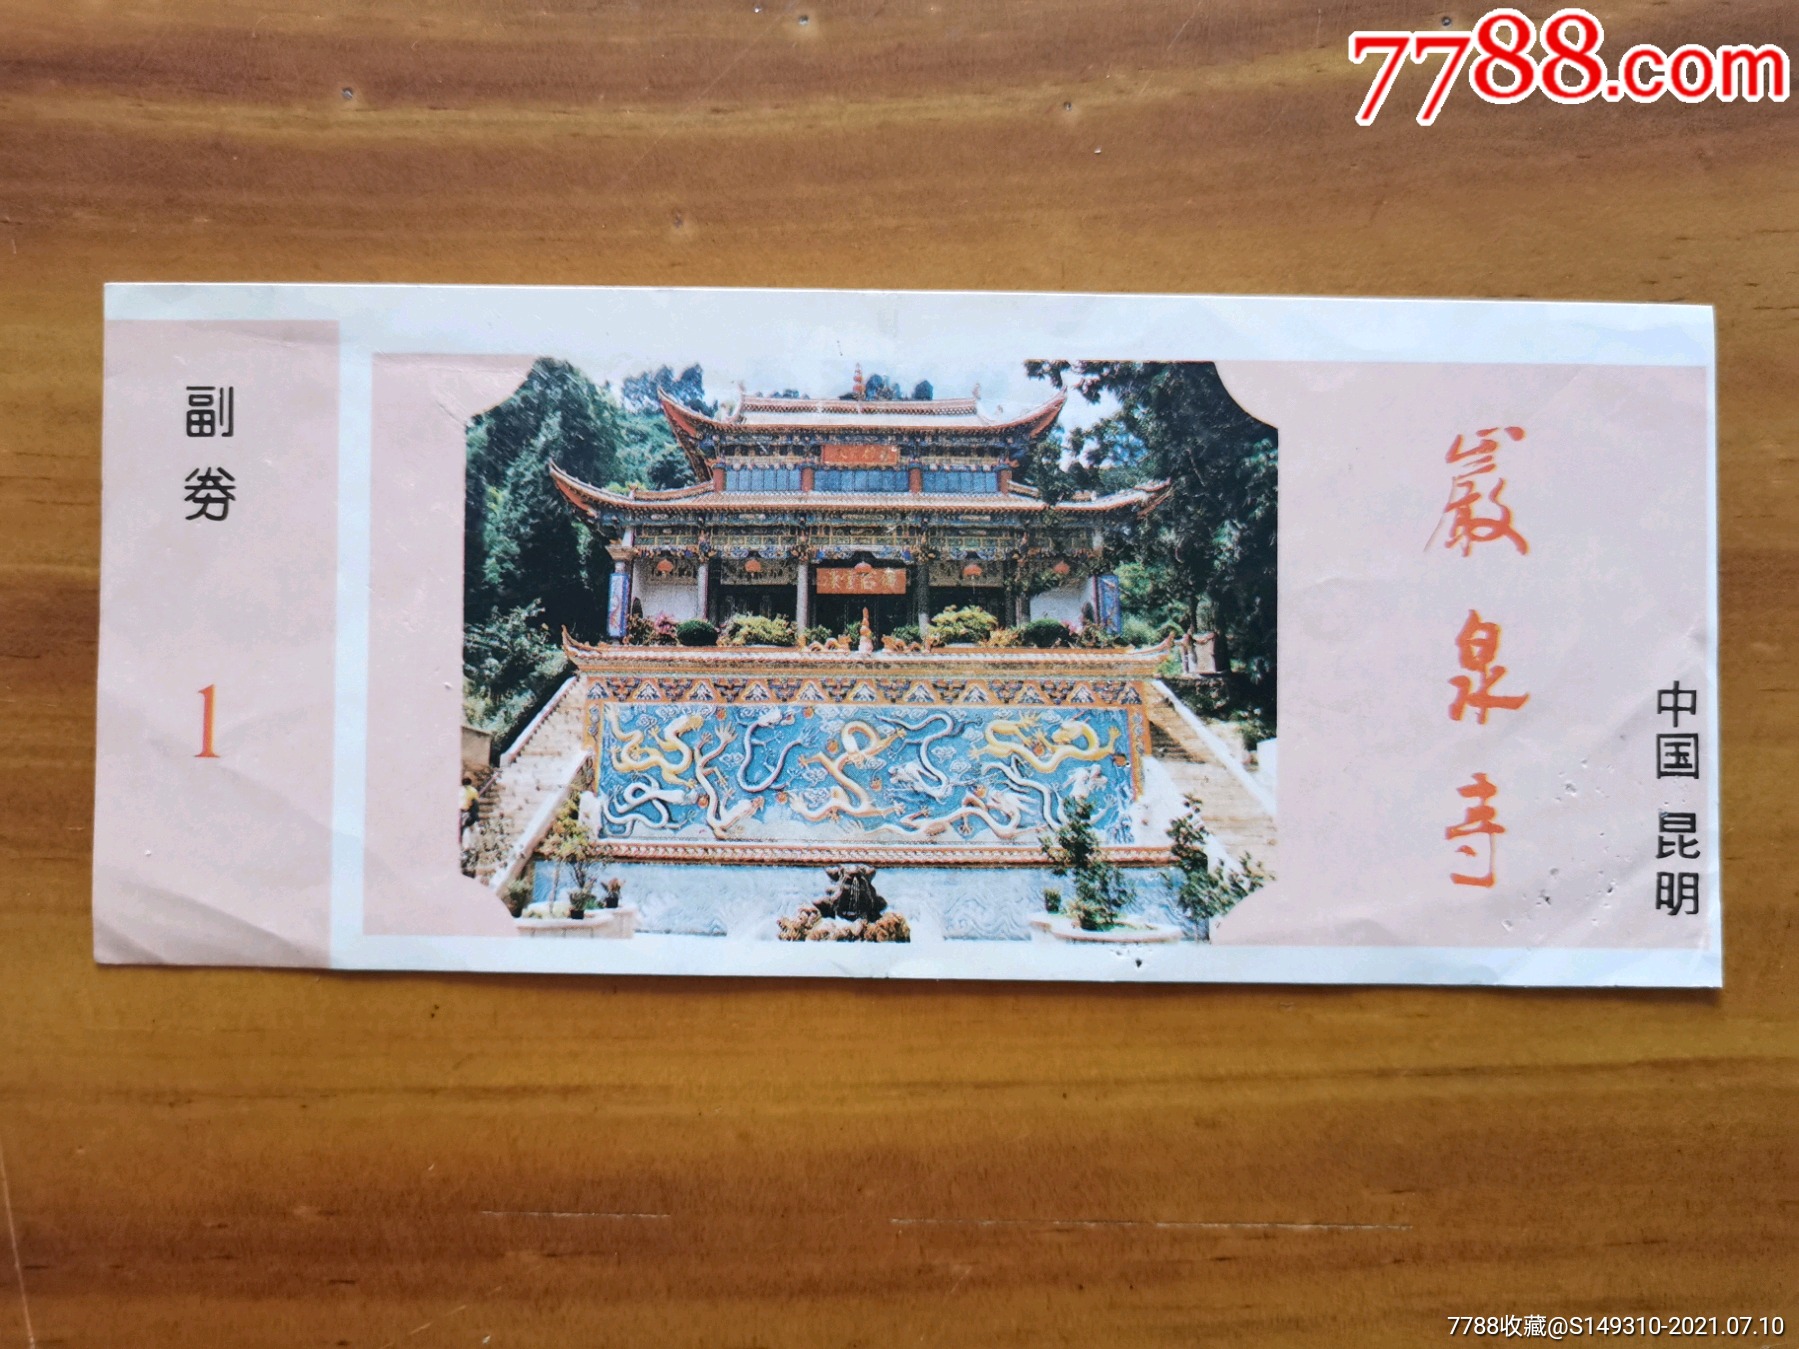 宜良岩泉寺风景区门票图片